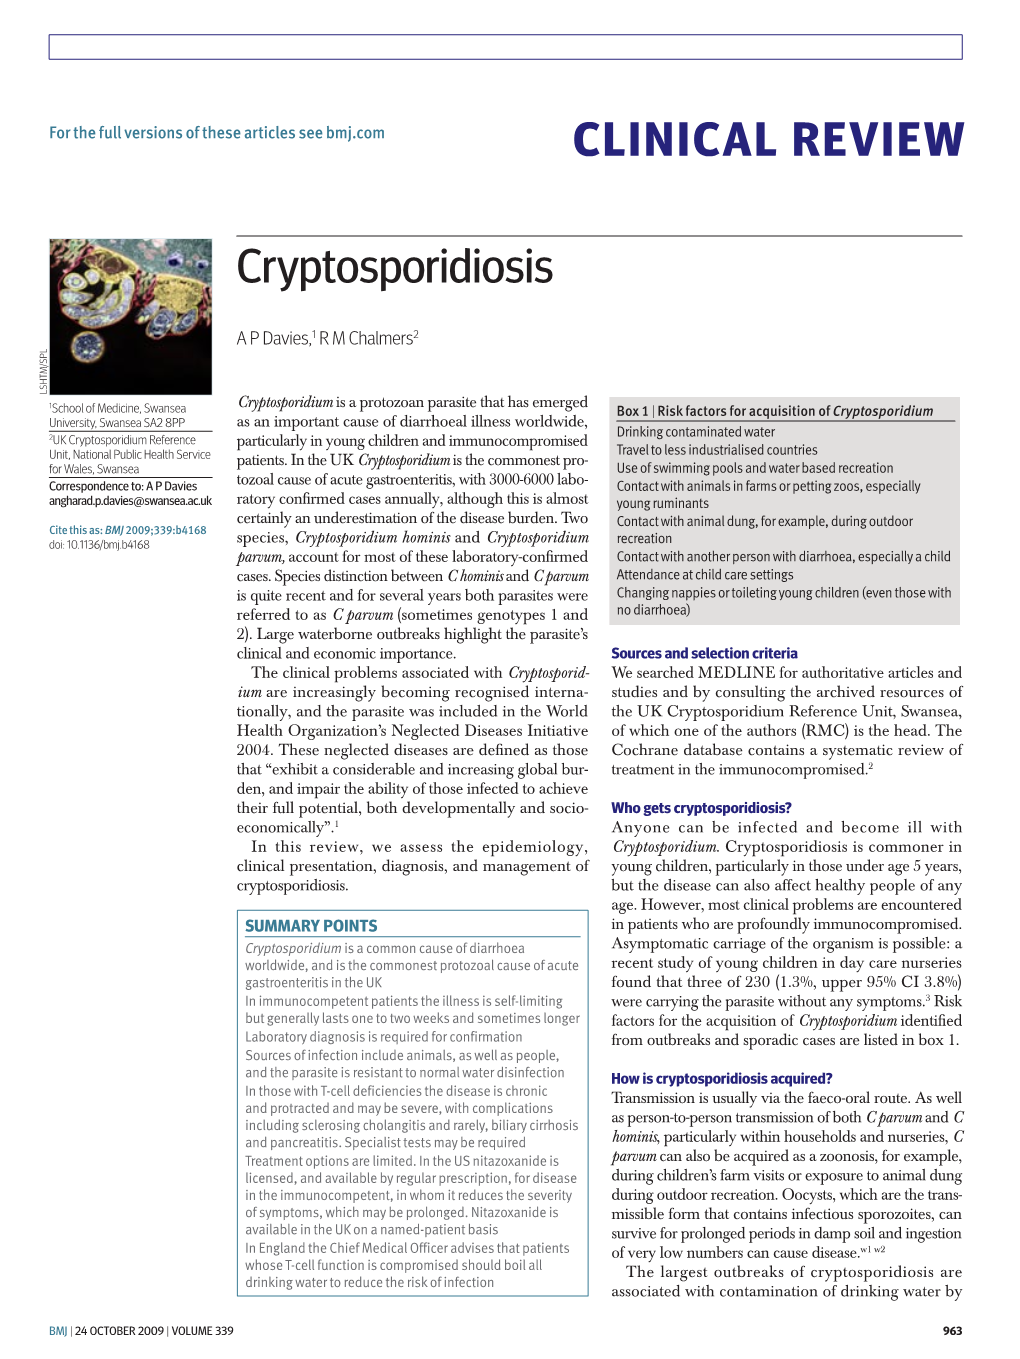 Clinical Review Cryptosporidiosis